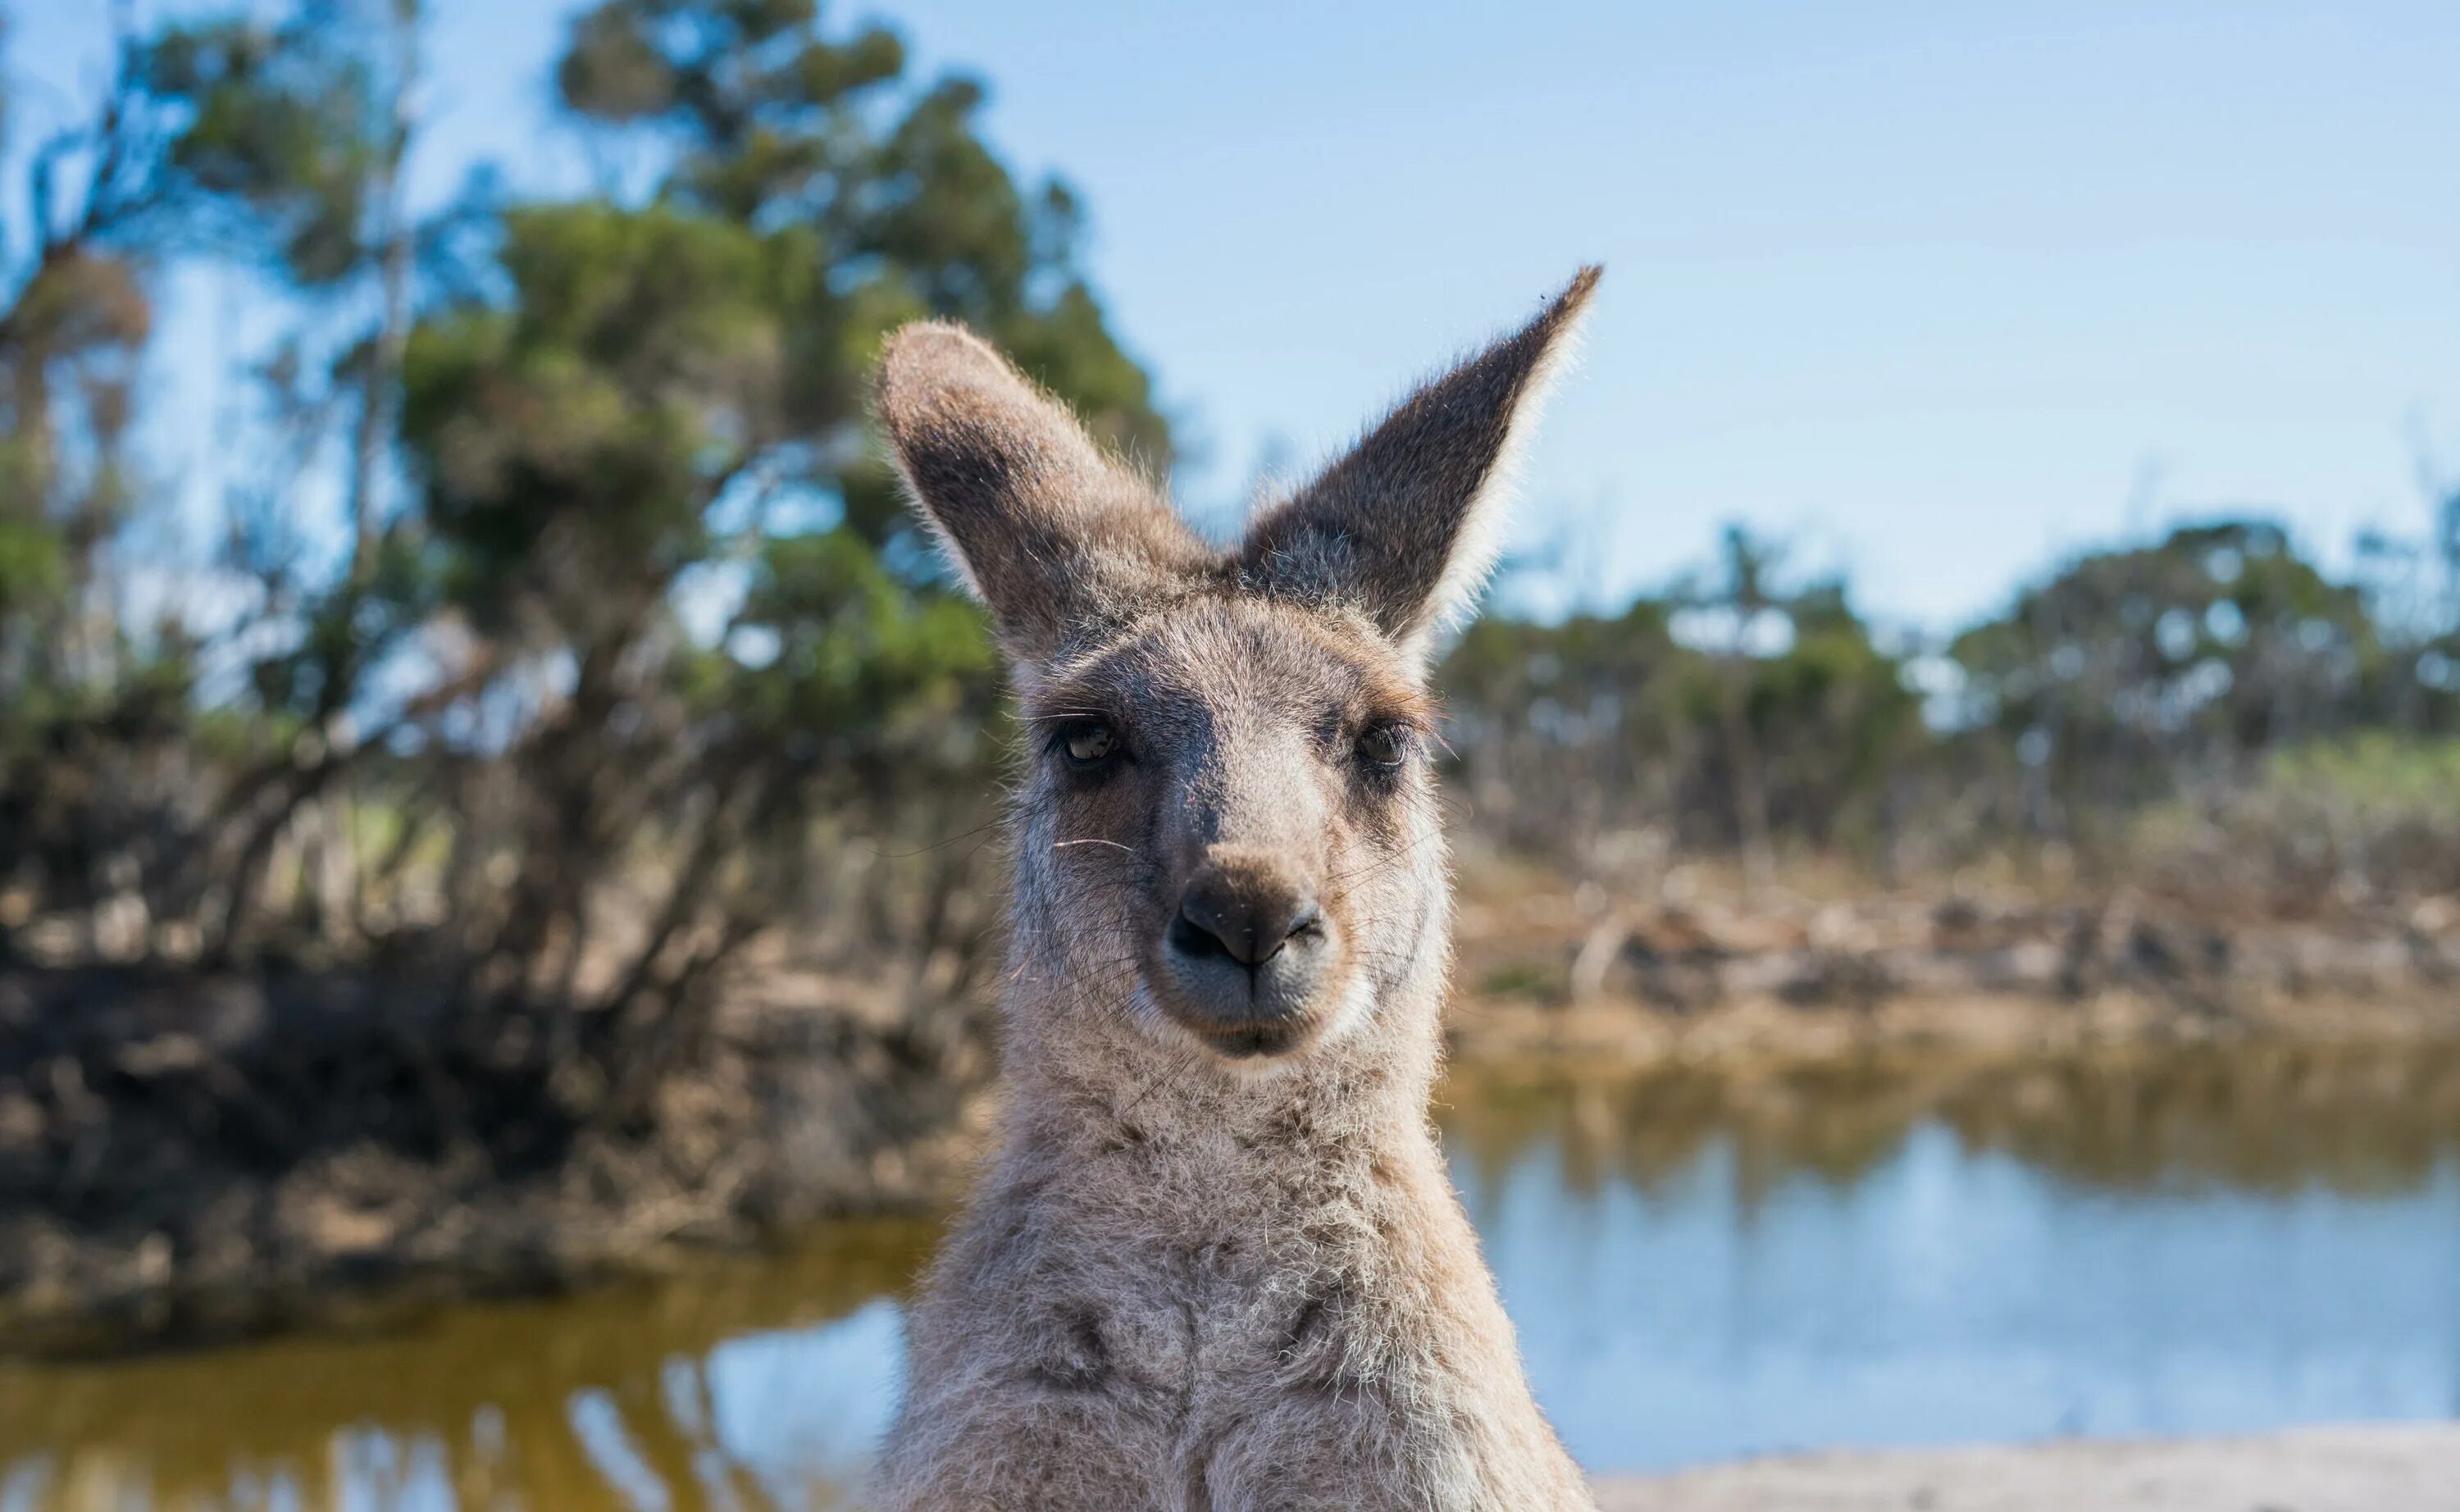 Австралия природа и люди. Фауна Австралии кенгуру. Австралия природа кенгуру. Австралия кенгуру и коала. Кенгуру в новой Зеландии.